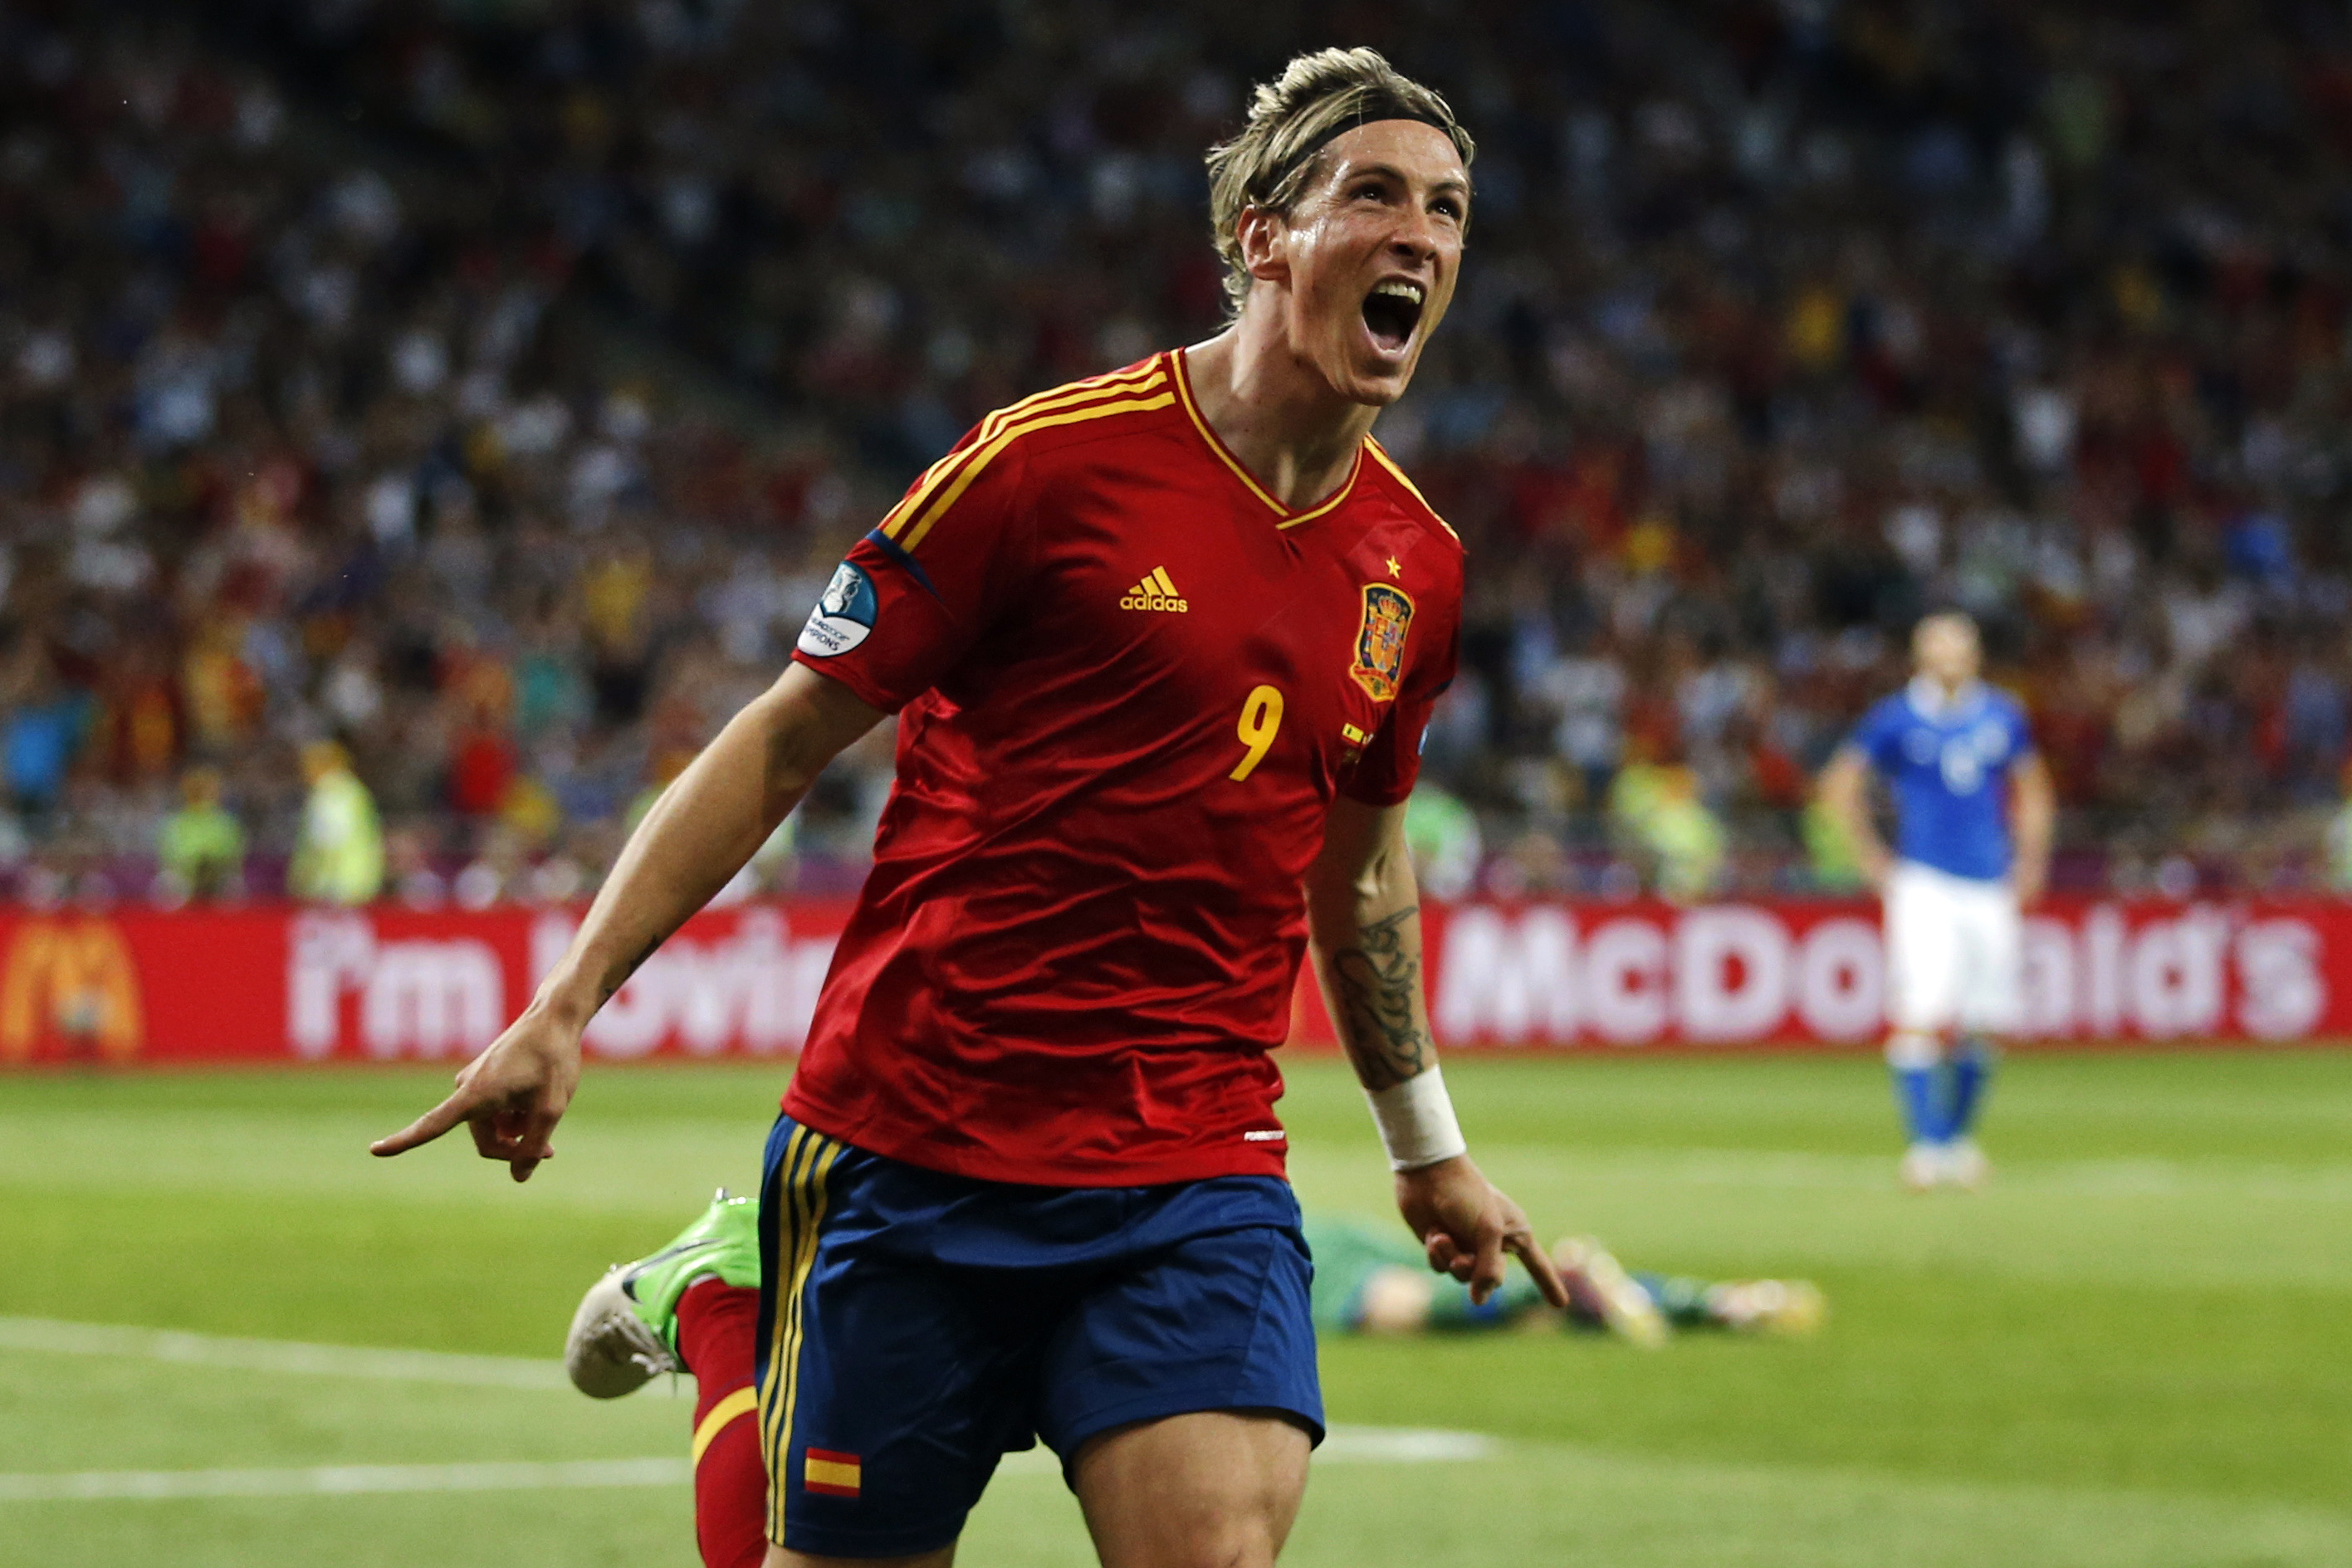 Fernando Torres 3-0-mål mot Italien gav seger i skytteligan.